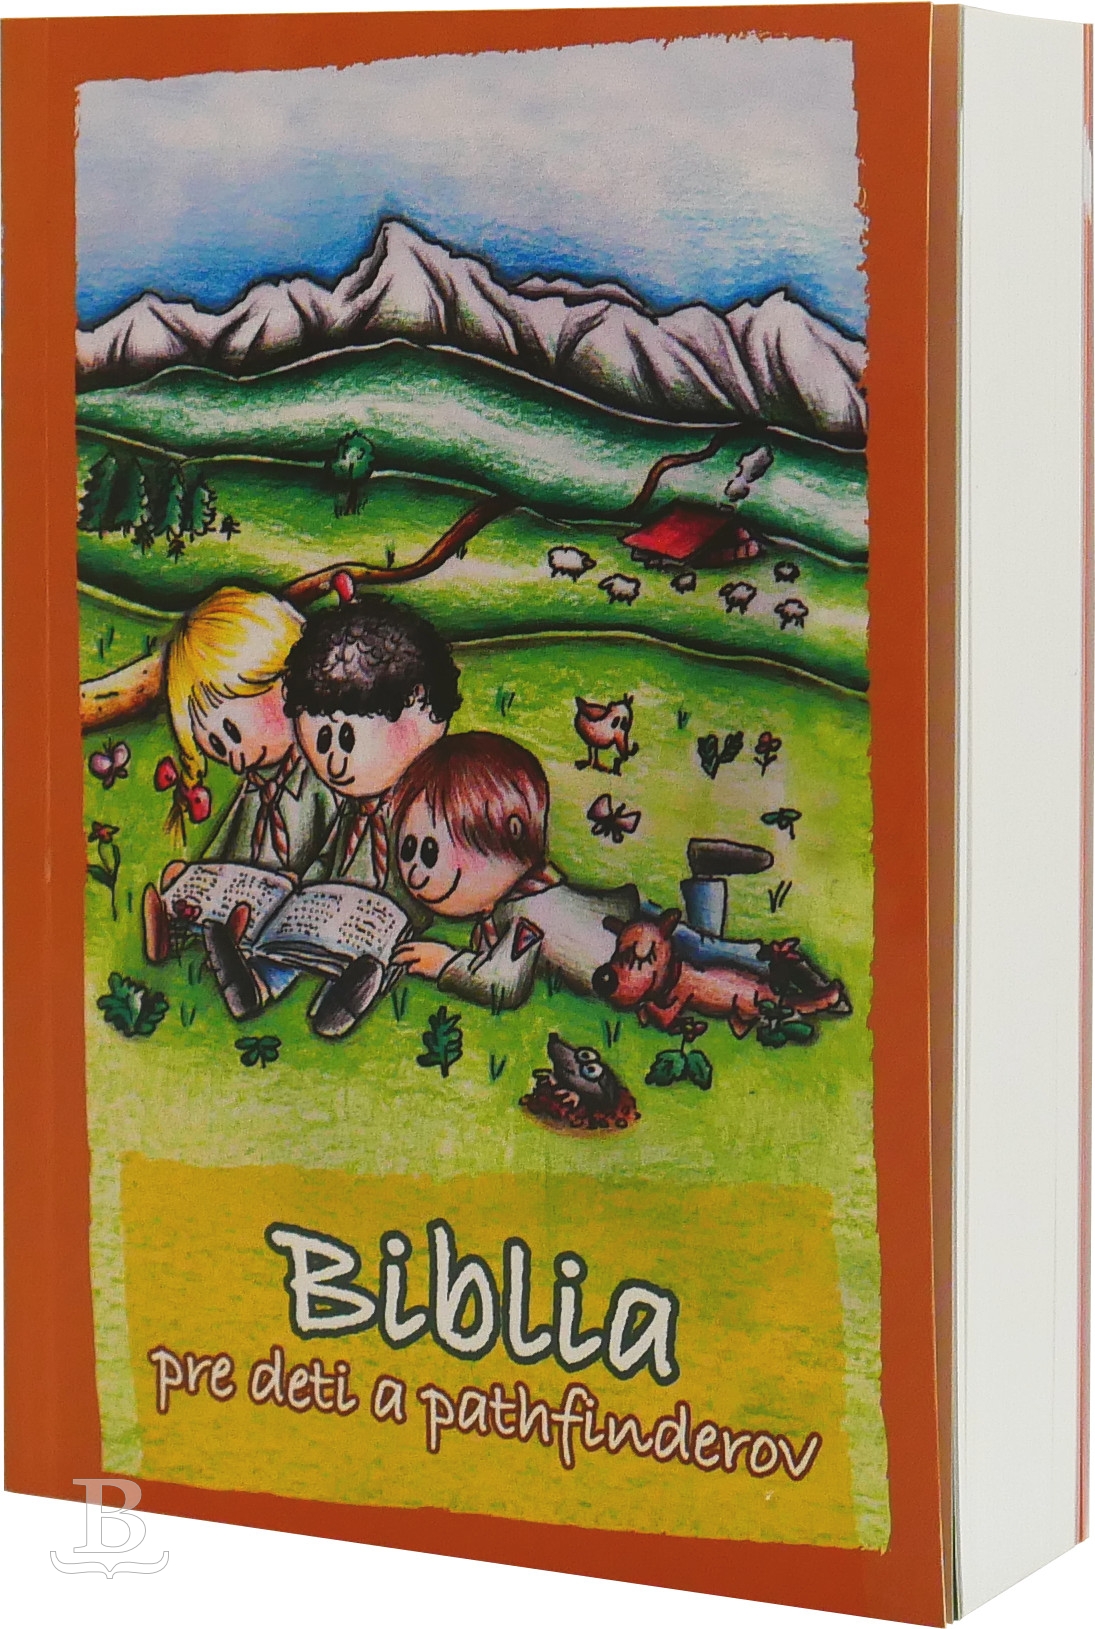 Biblia slovenská, ekumenický preklad, pre deti a pathfinderov, 2012